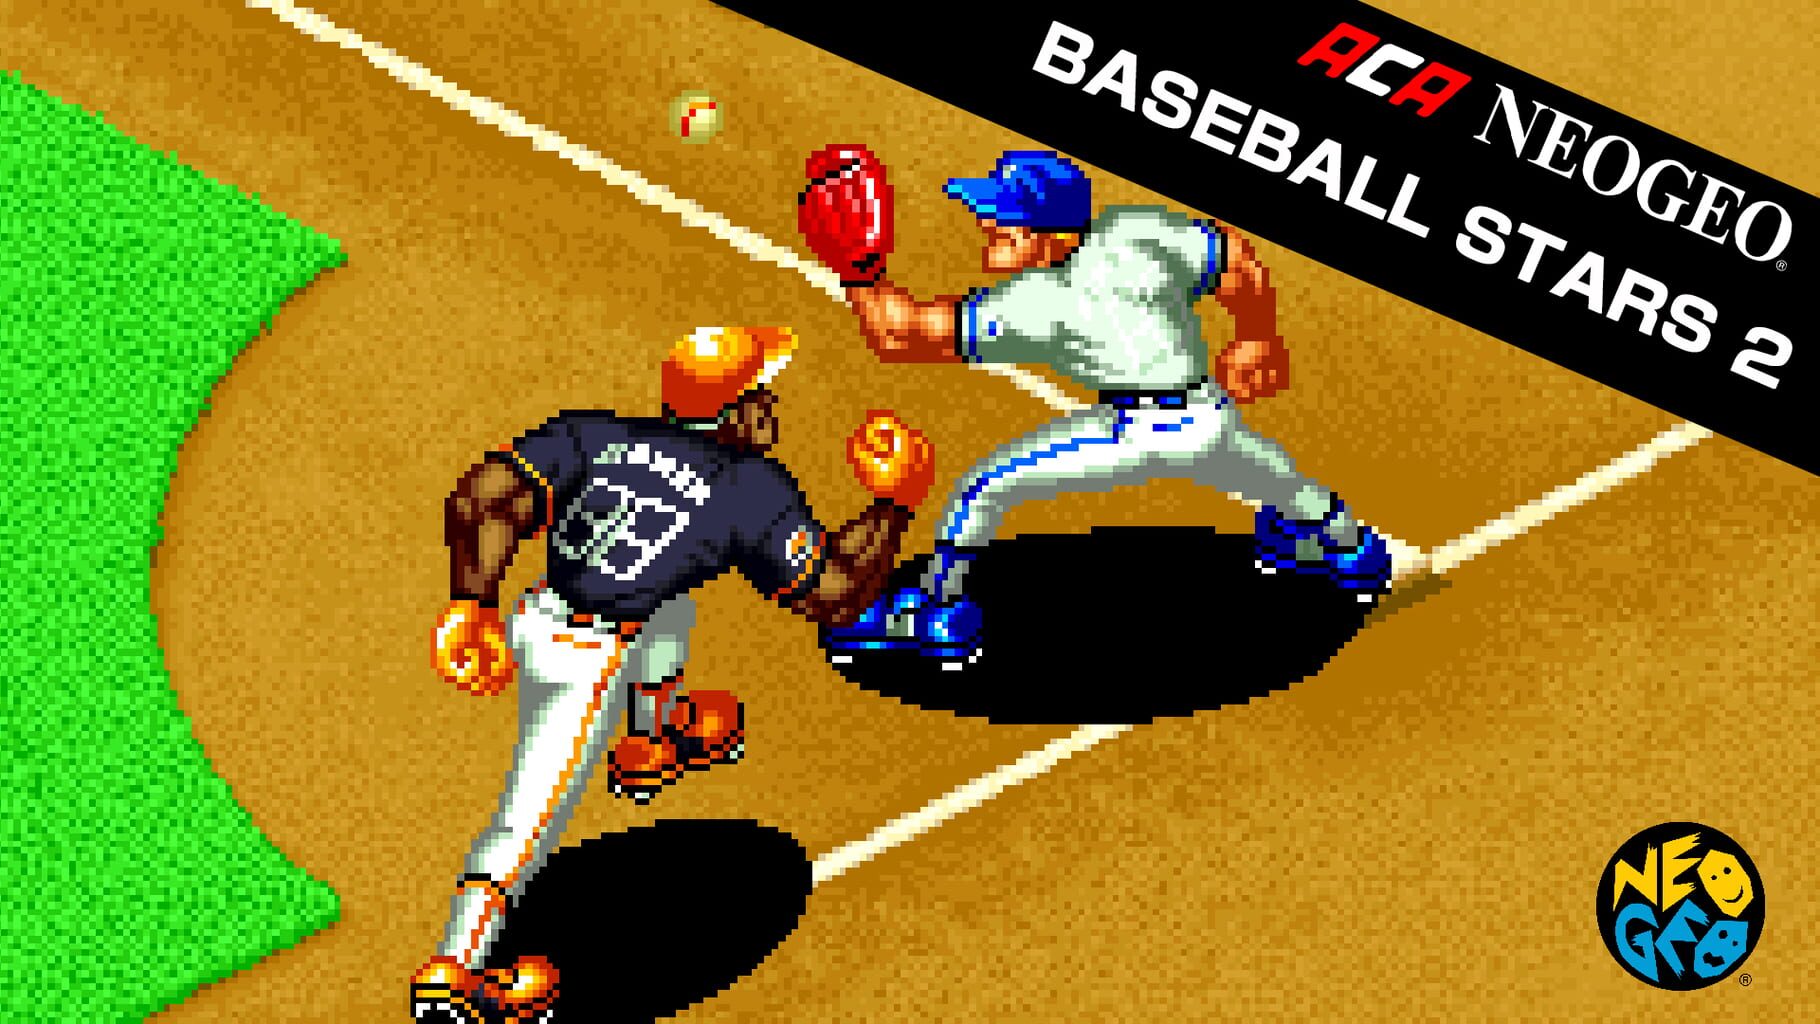 ACA Neo Geo: Baseball Stars 2 artwork